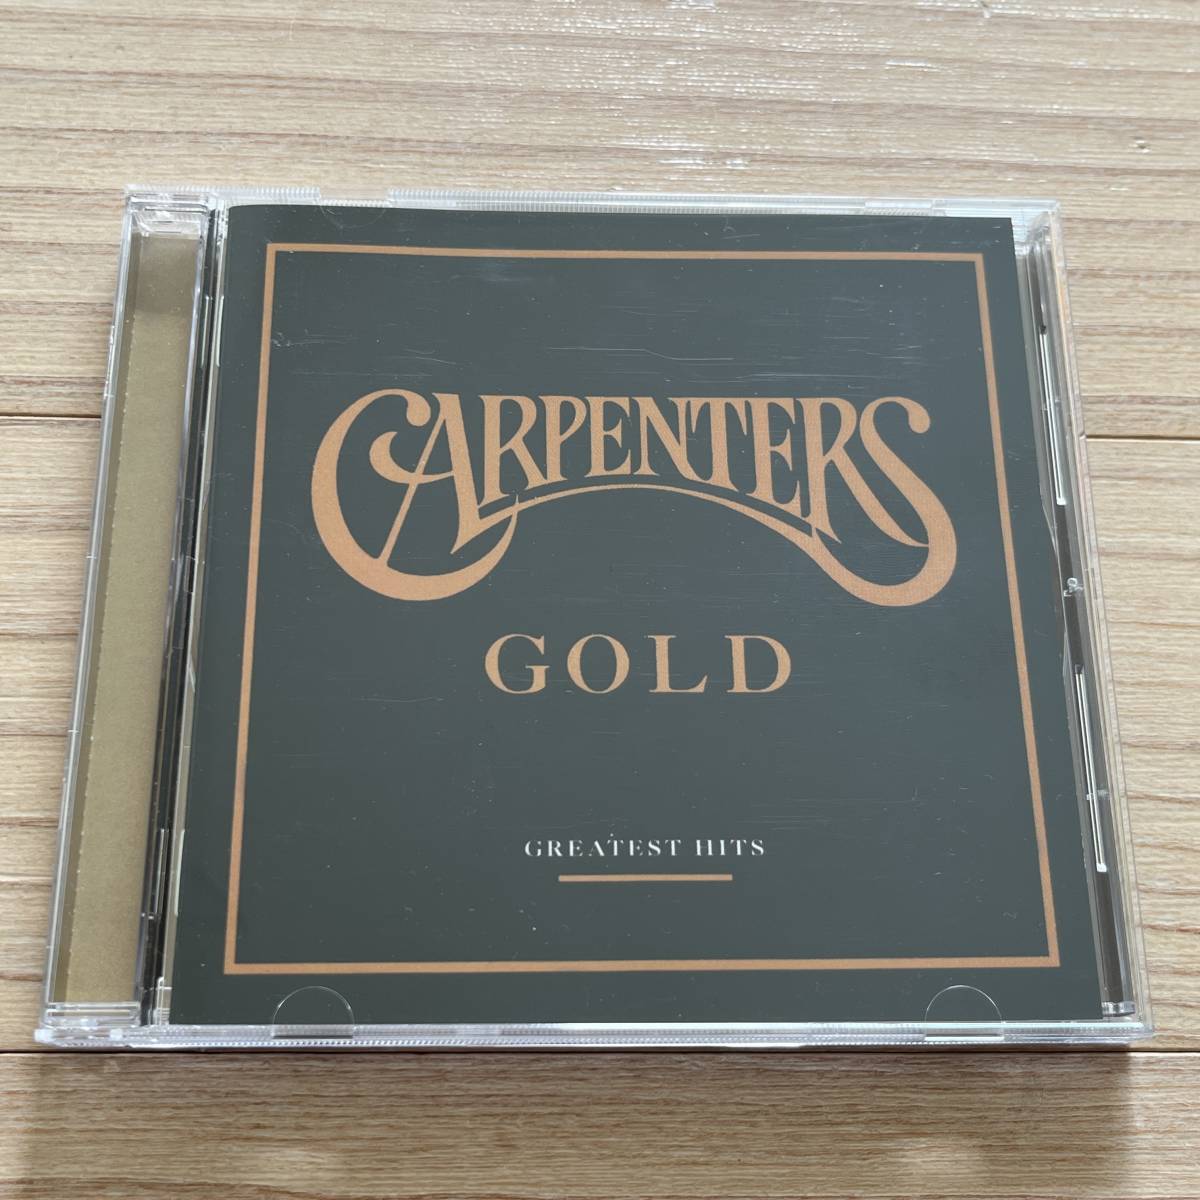 【輸入盤/CD/A&M Records/490 865-2/2000年盤】Carpenters / Carpenters Gold (Greatest Hits) ............... //Pop Rock,Vocal,Ballad//_画像1